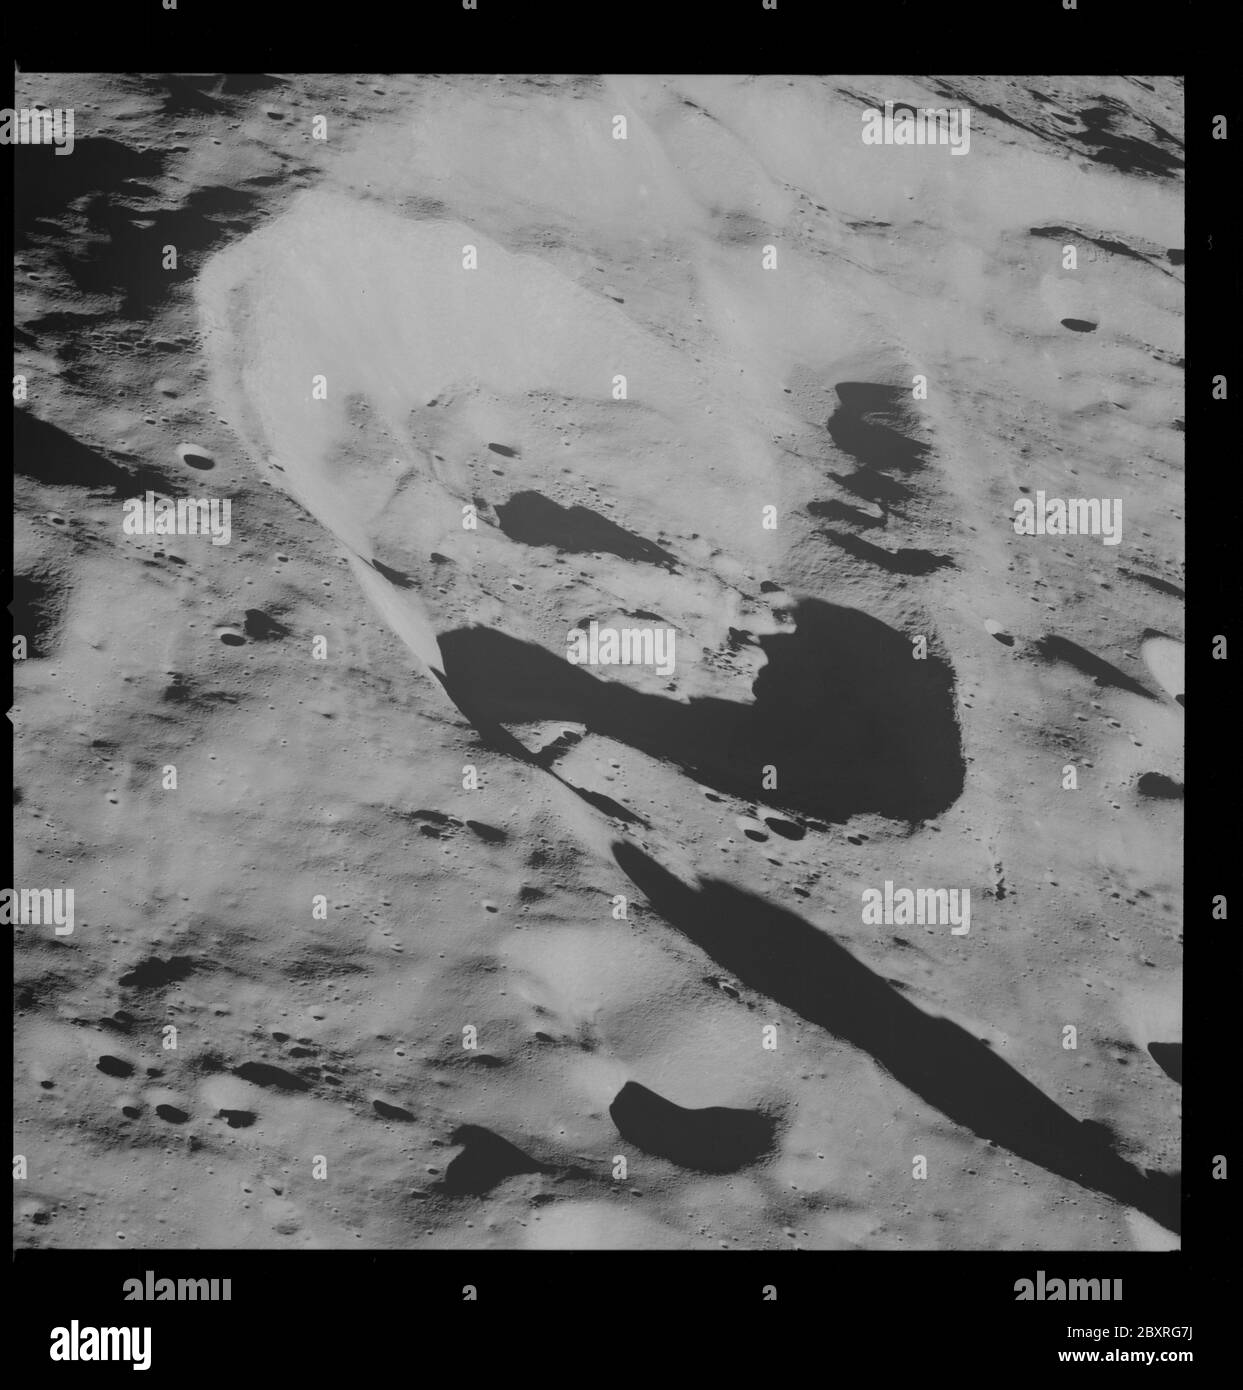 AS08-13-2317 - Apollo 8 - immagine della missione Apollo 8, Luna; ambito e contenuto: Il database originale descrive questo come: Descrizione: Apollo 8, Luna. Latitudine 7 gradi 30 Sud, Longitudine 159.5 gradi 30 Ovest. Modalità inclinazione telecamera: Bassa obliqua. Direzione: Sud. Angolo solare 10 gradi. La rivista Original Film è stata etichettata come E. Camera Data: 70mm Hasselblad; F-Stop: F-5.6; Shutter Speed: 1/250 seconds. Tipo di pellicola: Kodak SO-3400 bianco e nero, ASA 40. Altra copertura fotografica: Lunar Orbiter 1 (lo i) S-3. Data del volo: 21-27,1968 dicembre. Oggetto: Volo Apollo 8, Fotografia lunare, Craters Categorie: Foto Stock